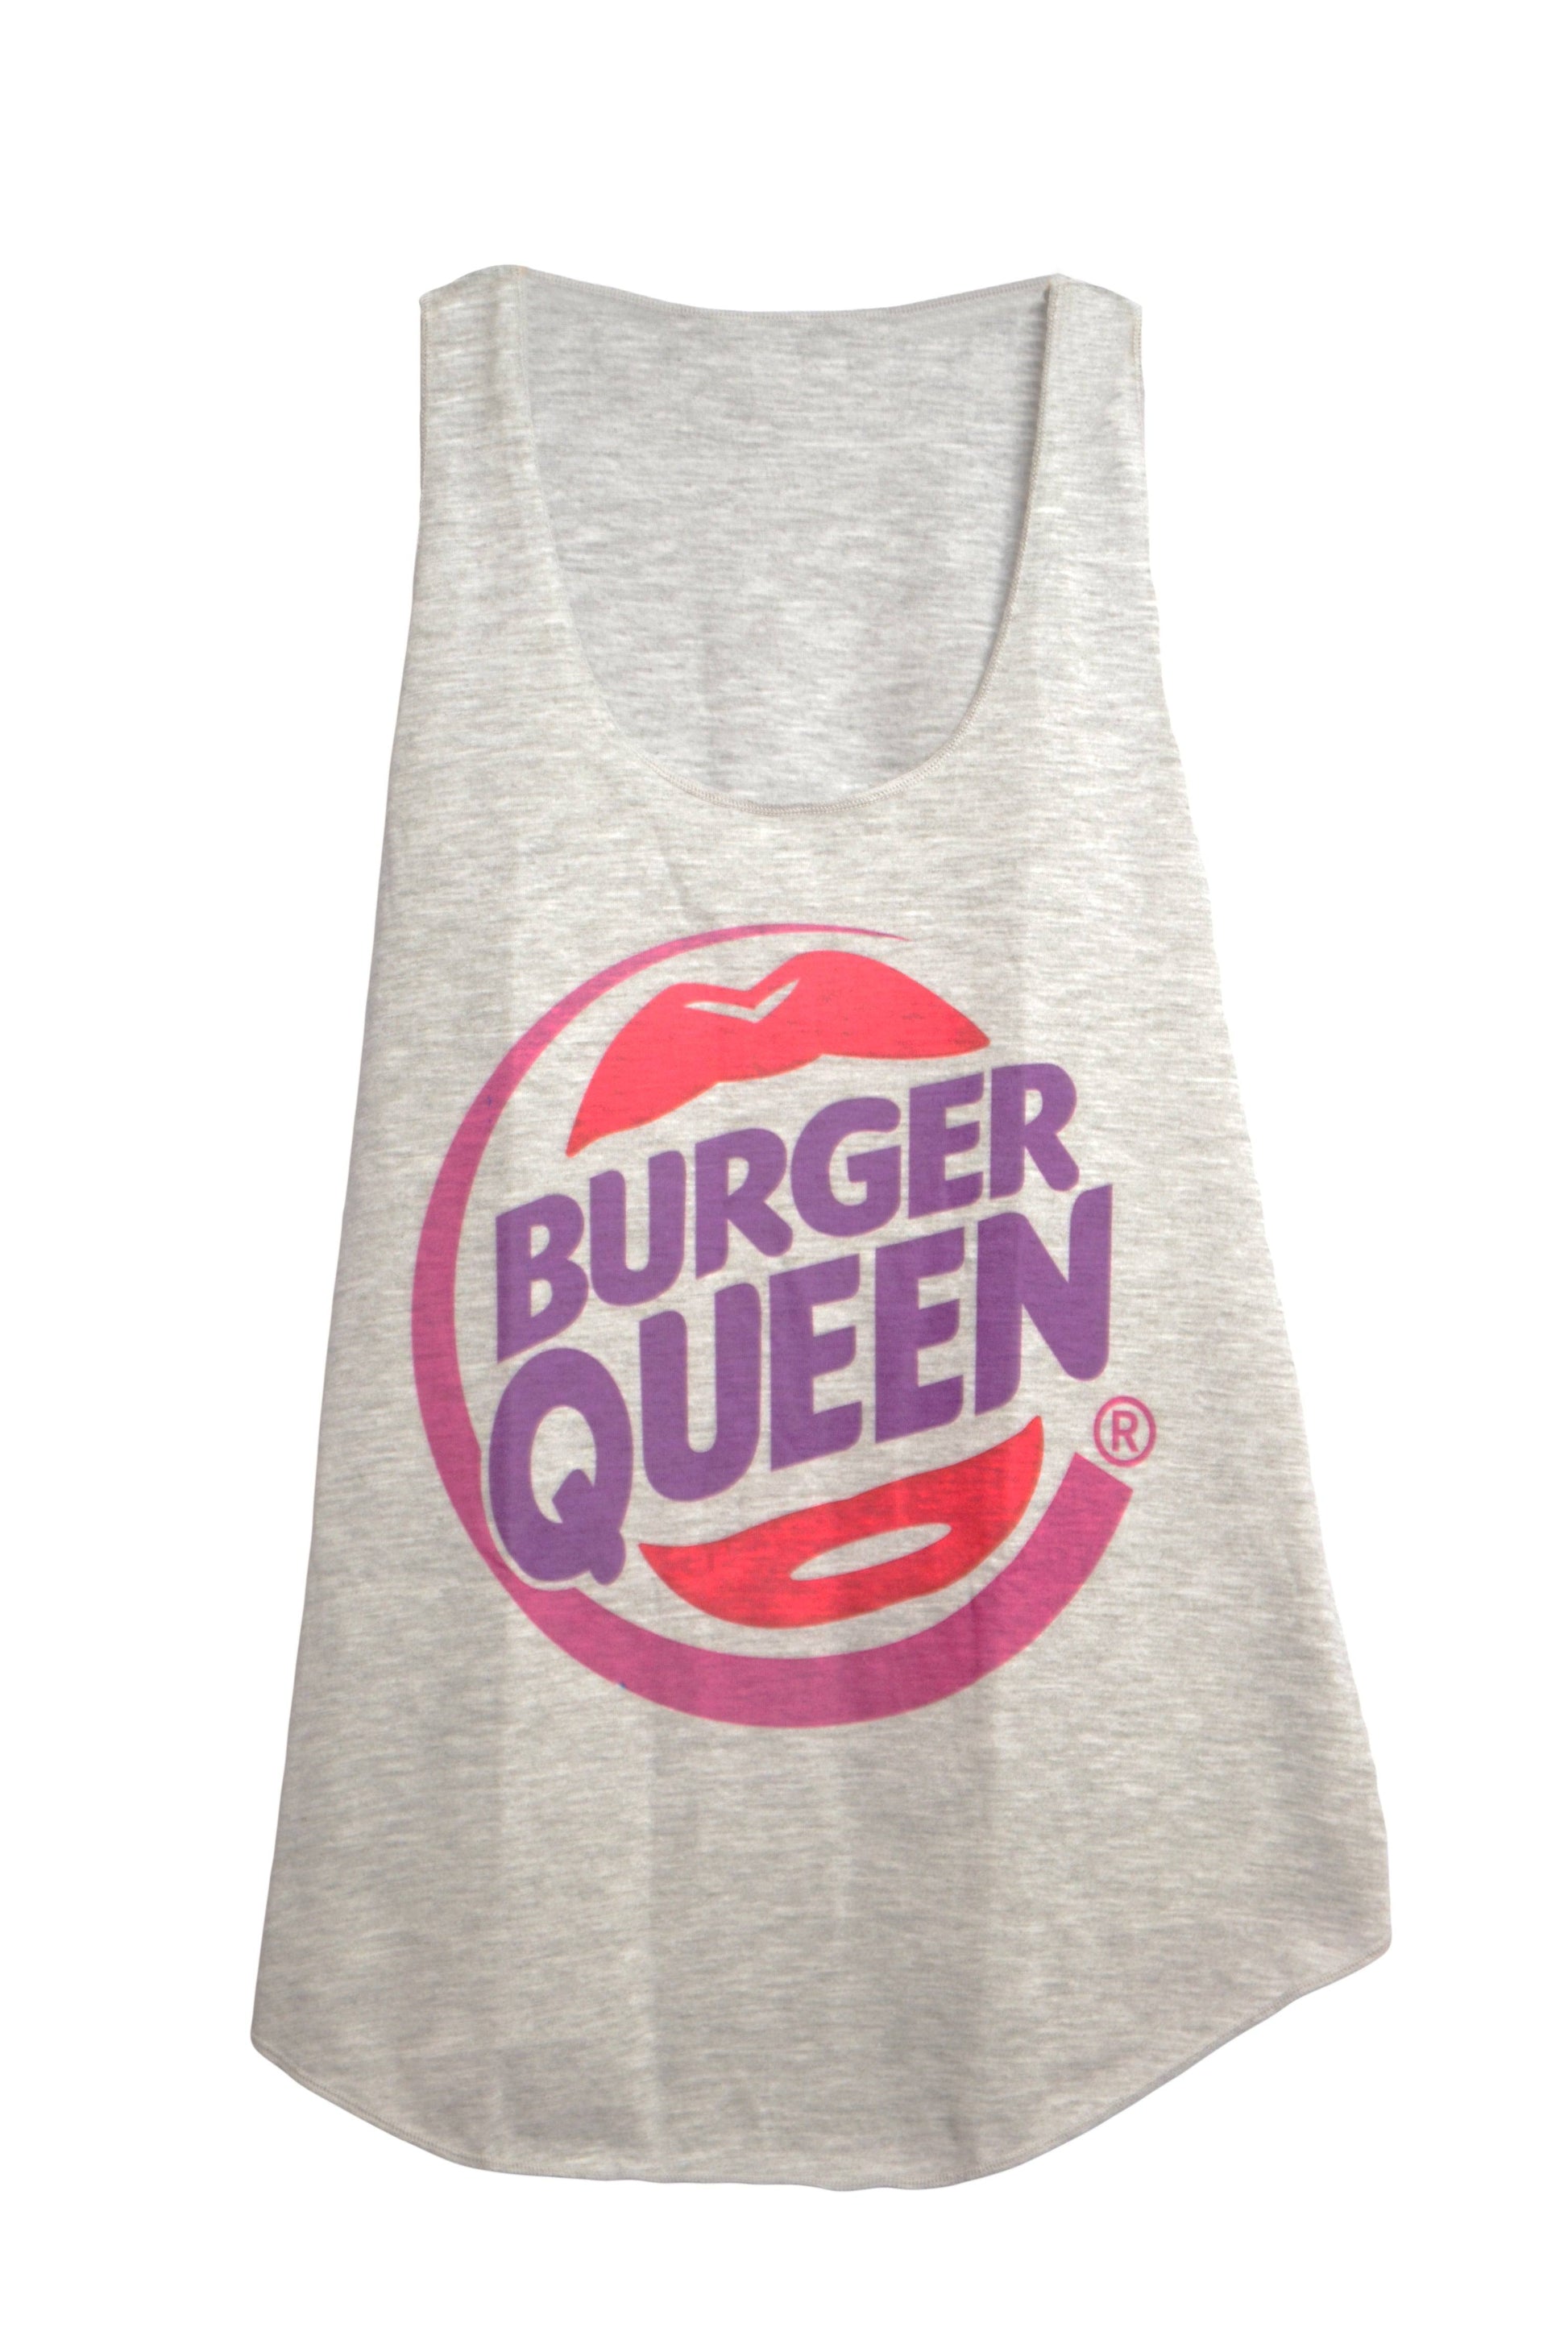 Débardeur femme burger queen couleur gris